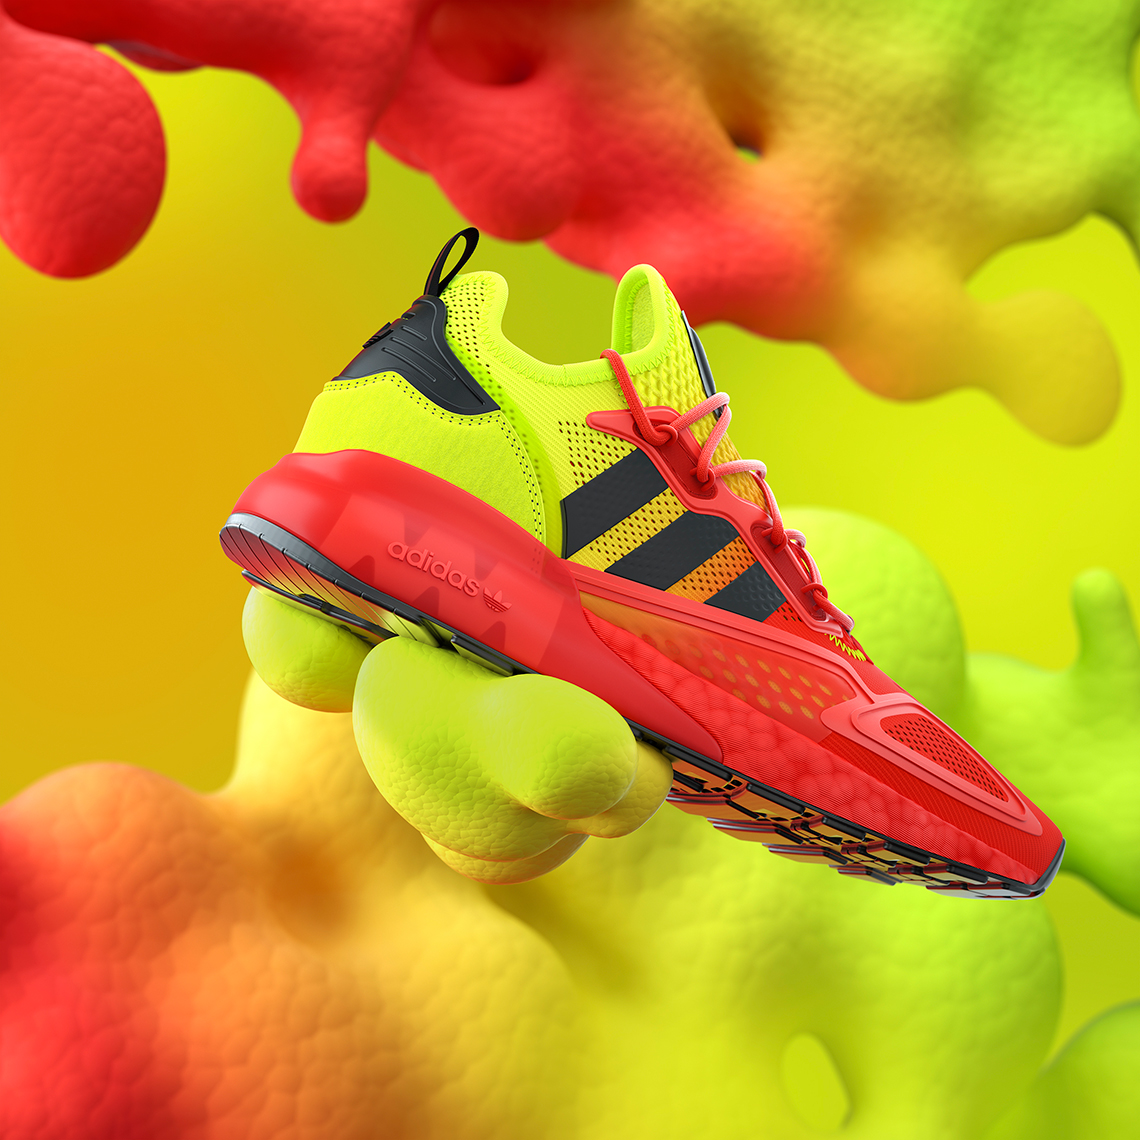 adidas-zx-2k-boost-red-neon-5.jpg